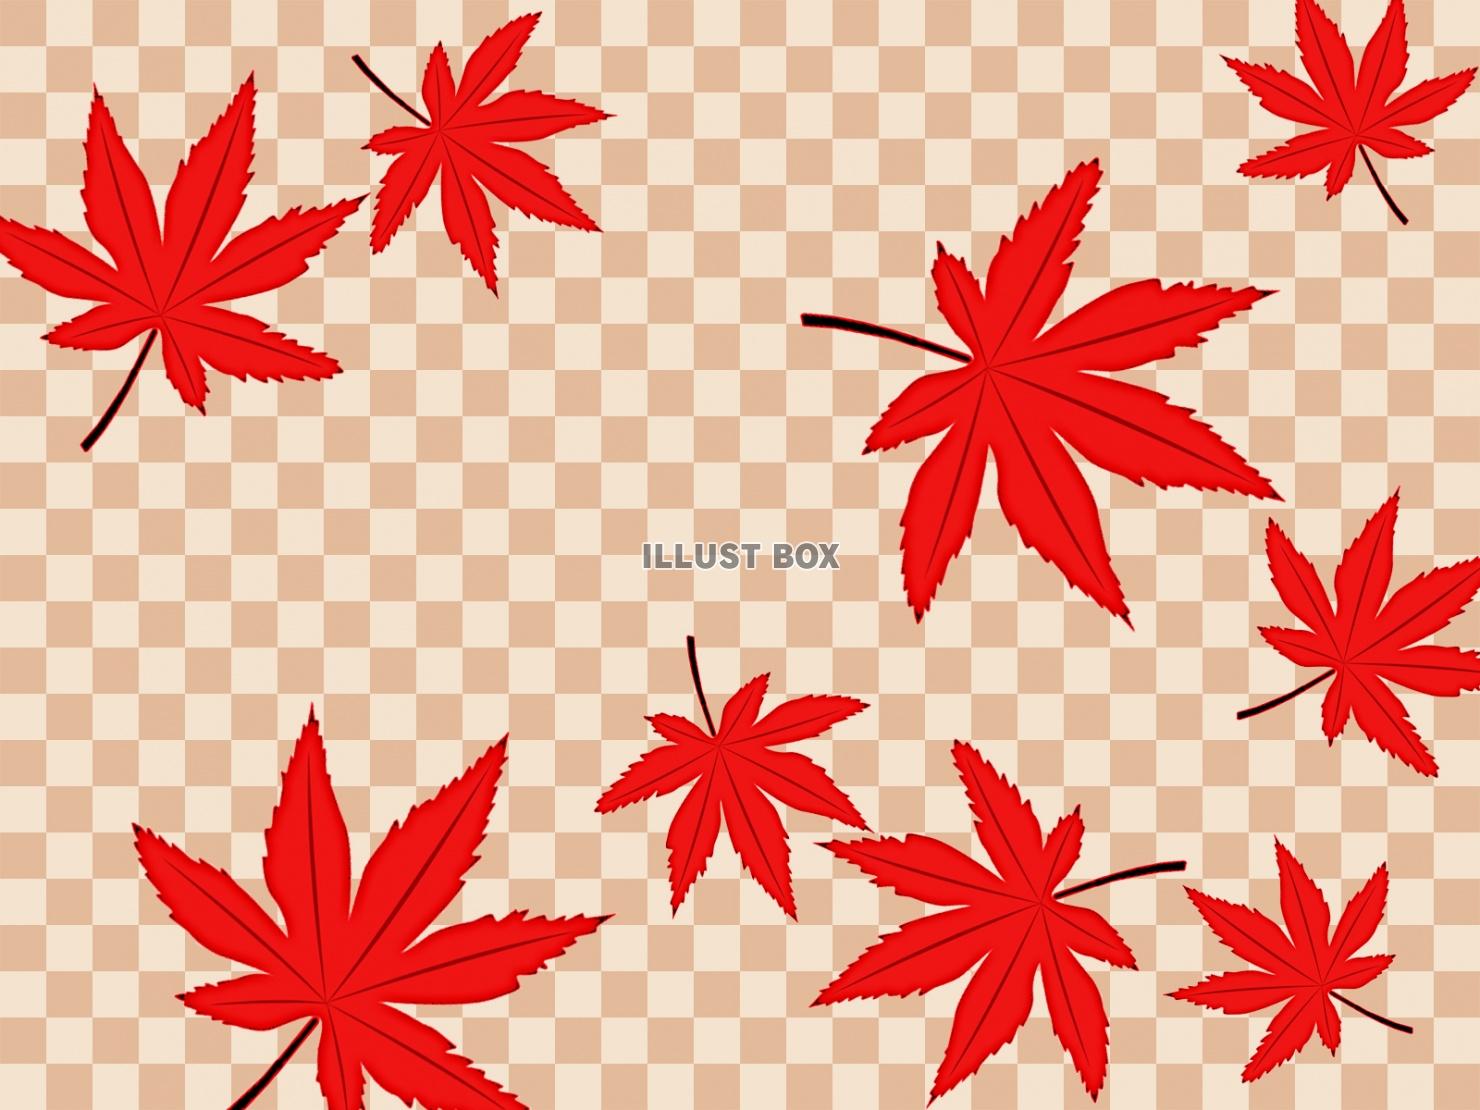 無料イラスト 市松模様と紅葉の葉っぱ壁紙シンプル背景素材イラスト